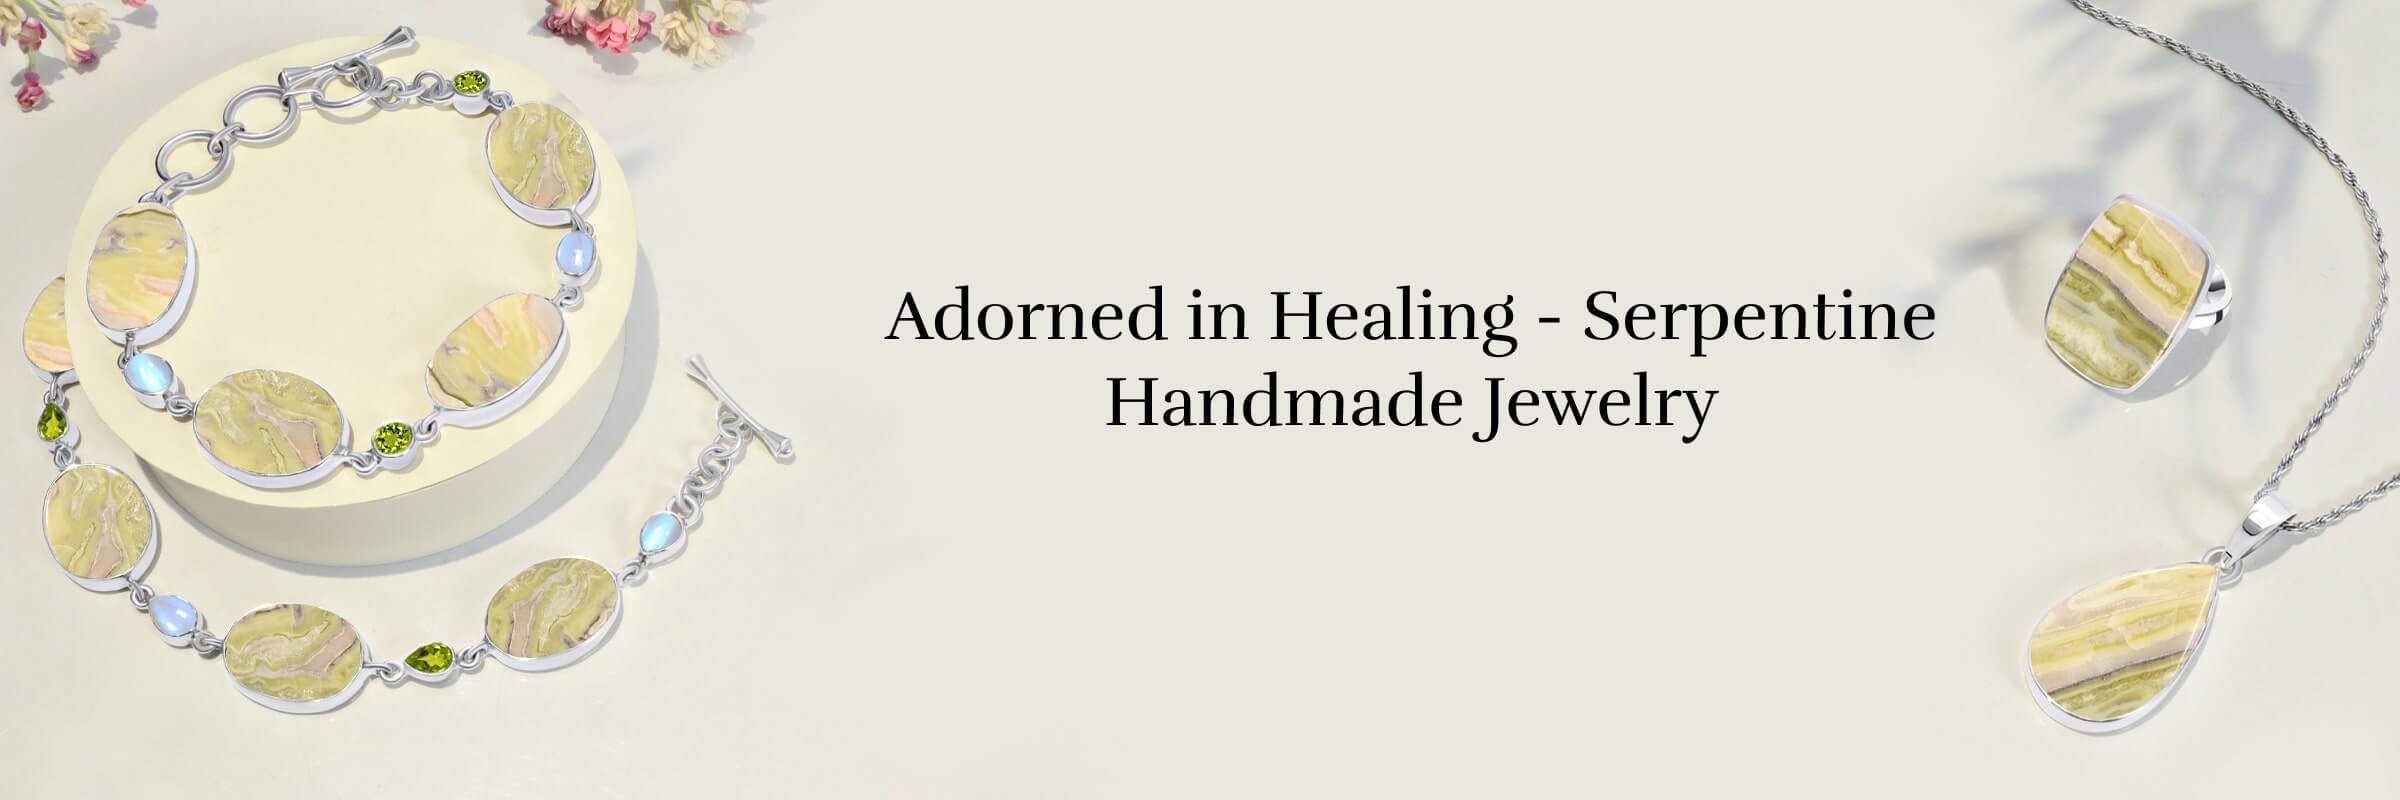 Wearing Serpentine Handmade Jewelry Helps in Emotional Healing